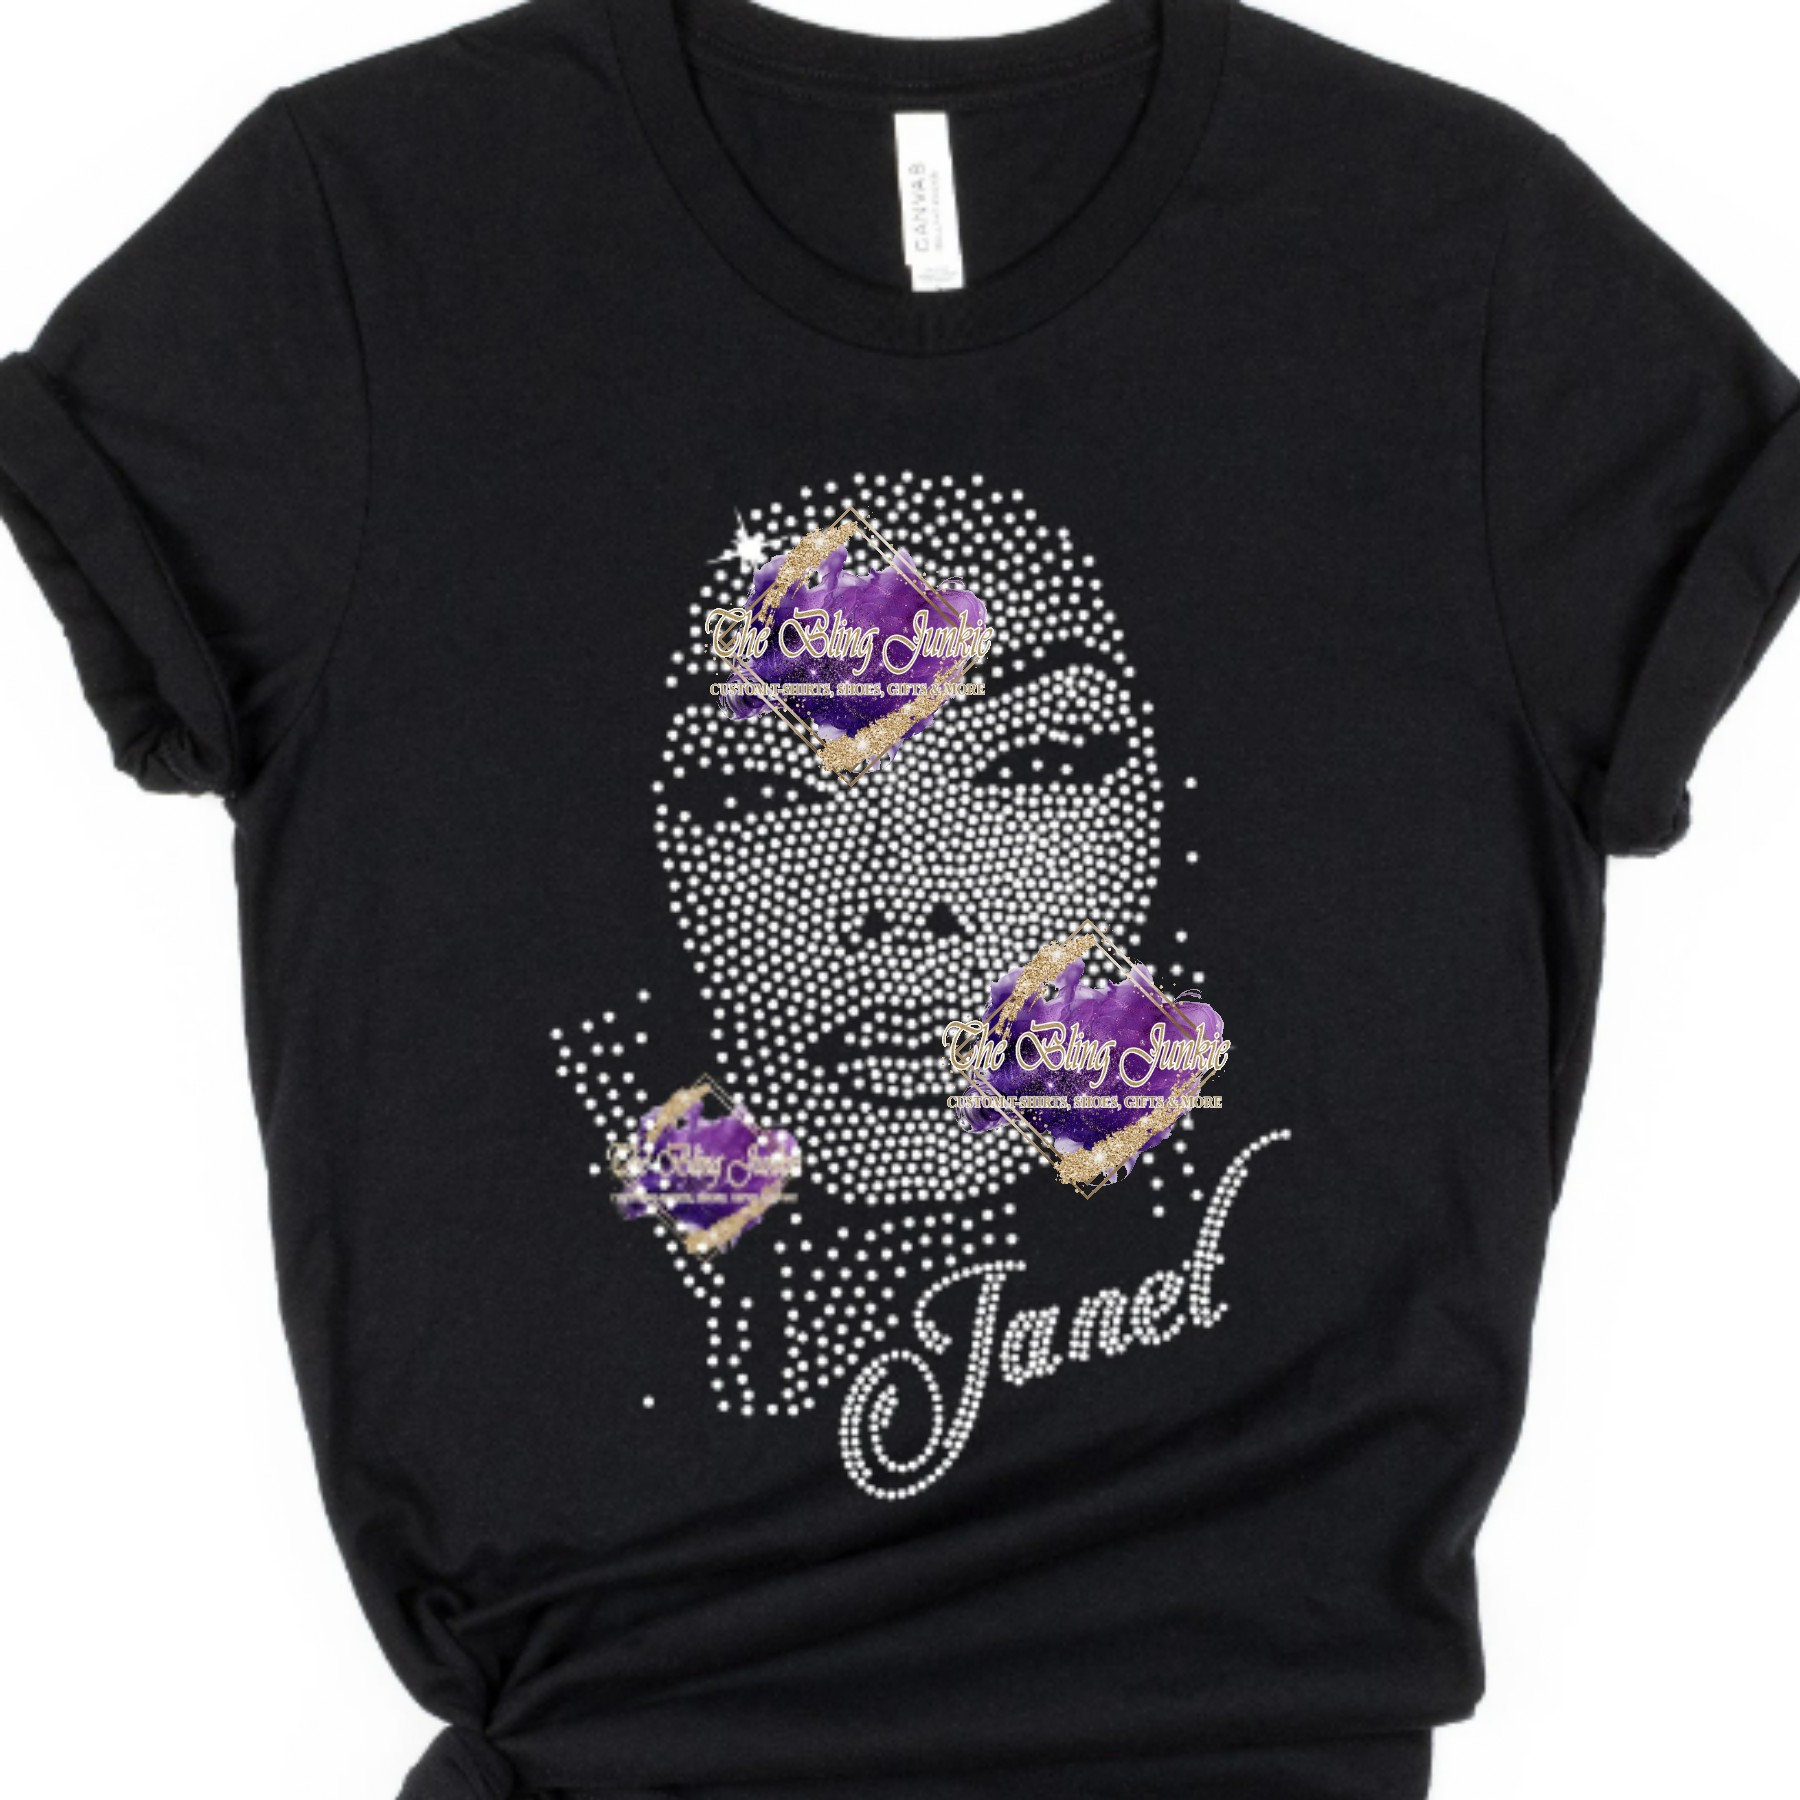 Janet Jackson Inspired Bling T-shirt, Janet Jackson T-shirt, Janet Jackson Rhinestone  Shirt, Please Read Description 